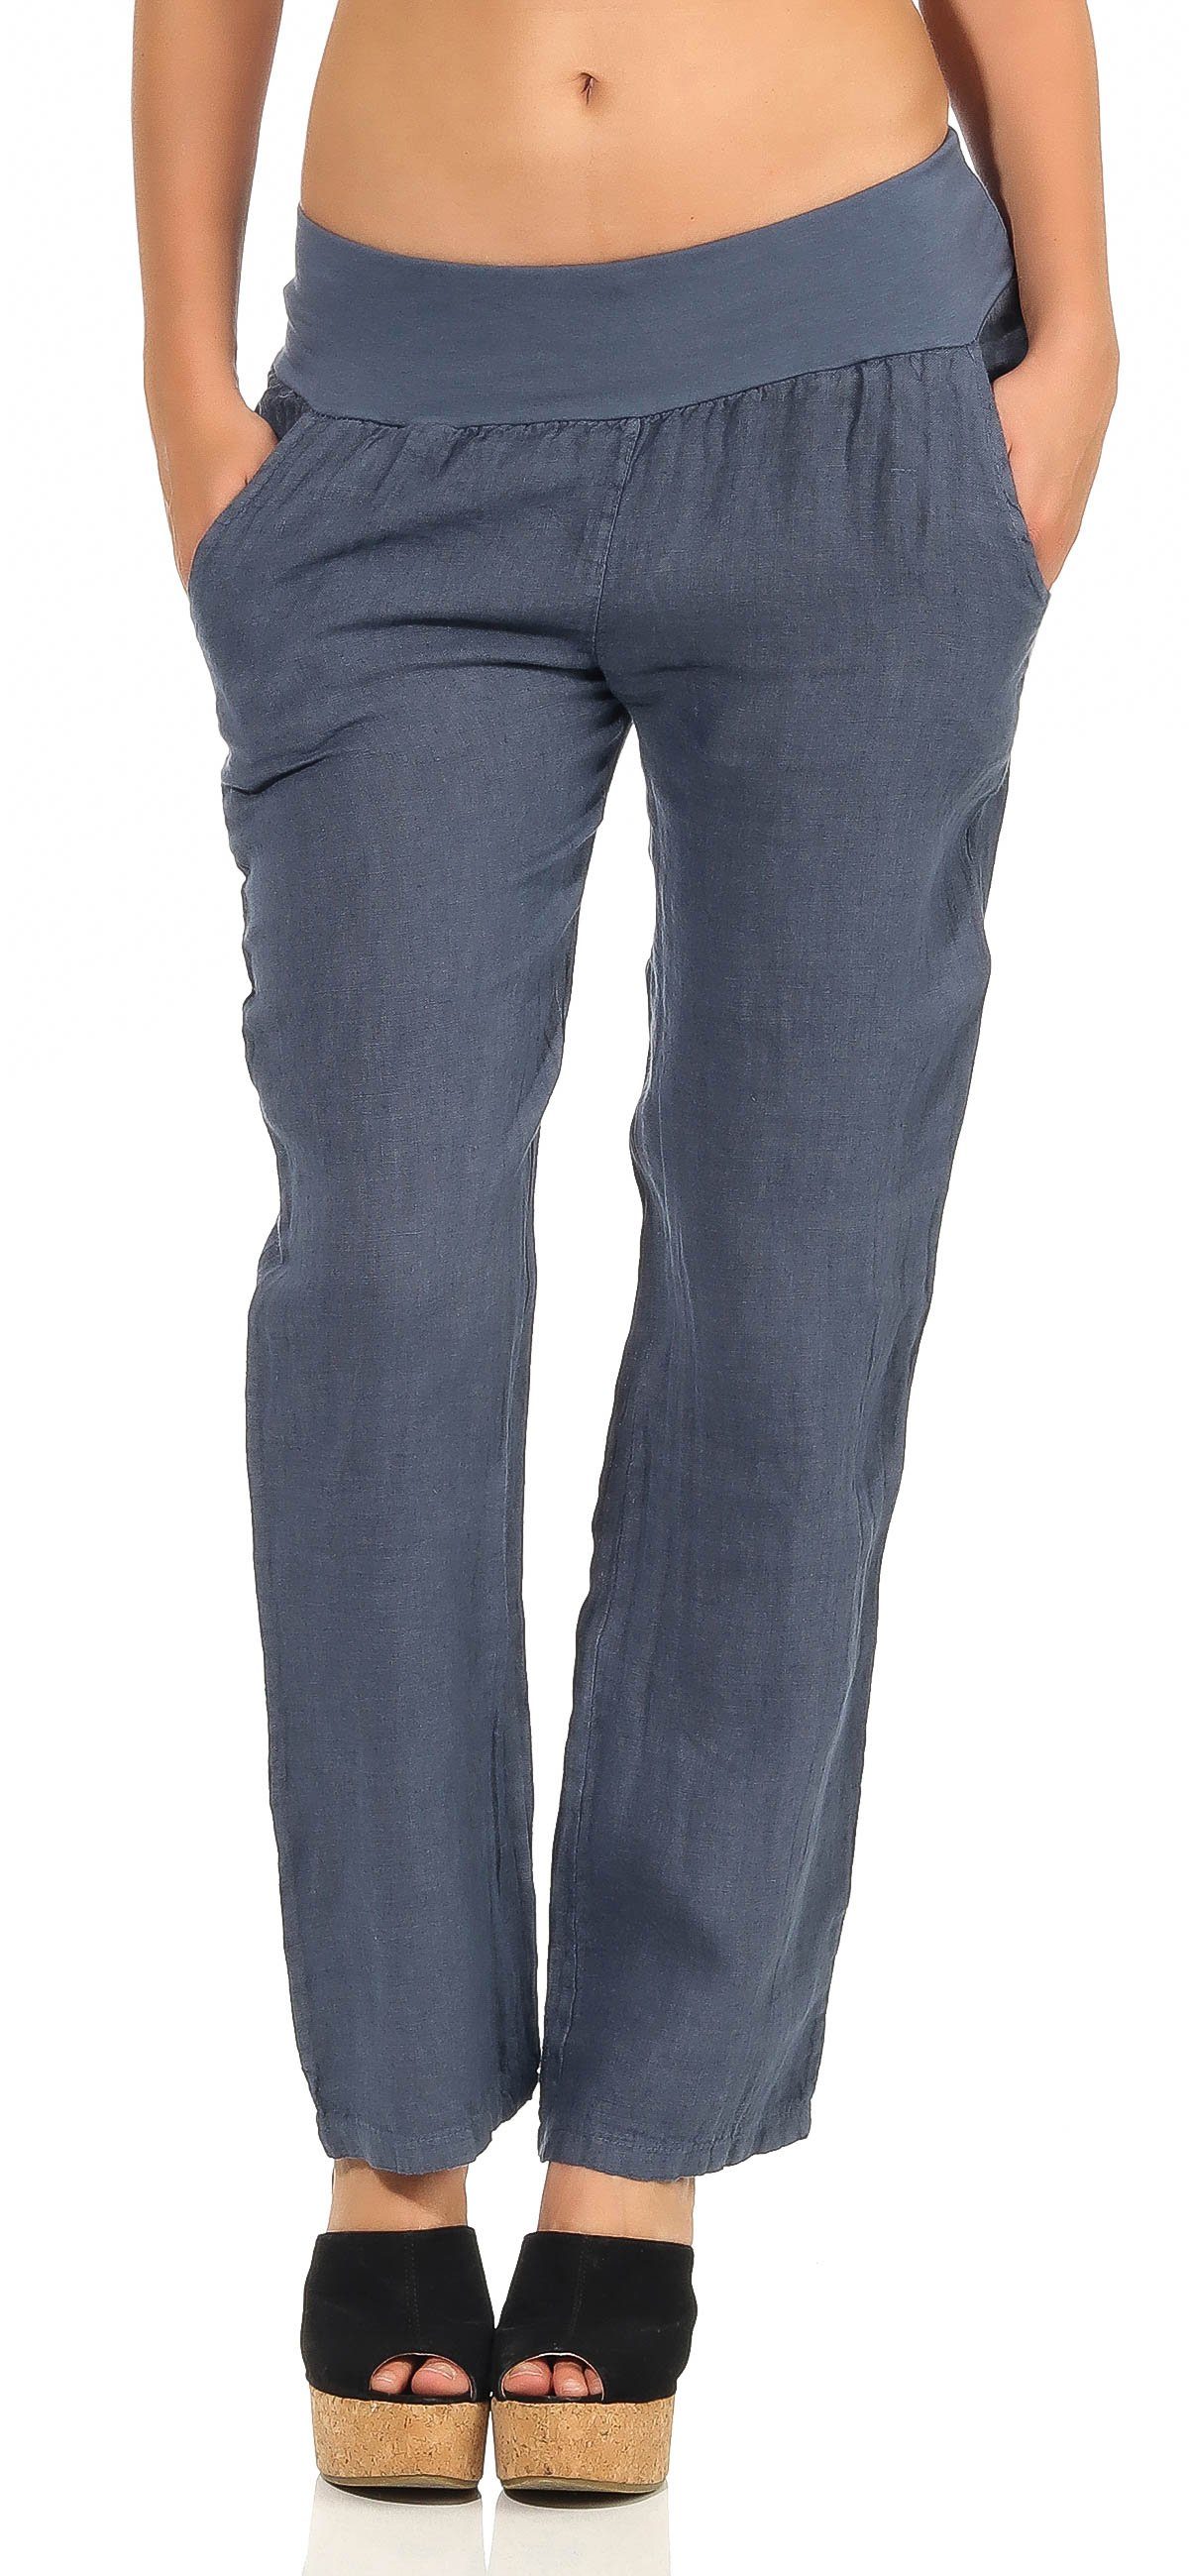 malito more than fashion Leinenhose 7792 leichte Stoffhose mit elastischem Bund jeansblau